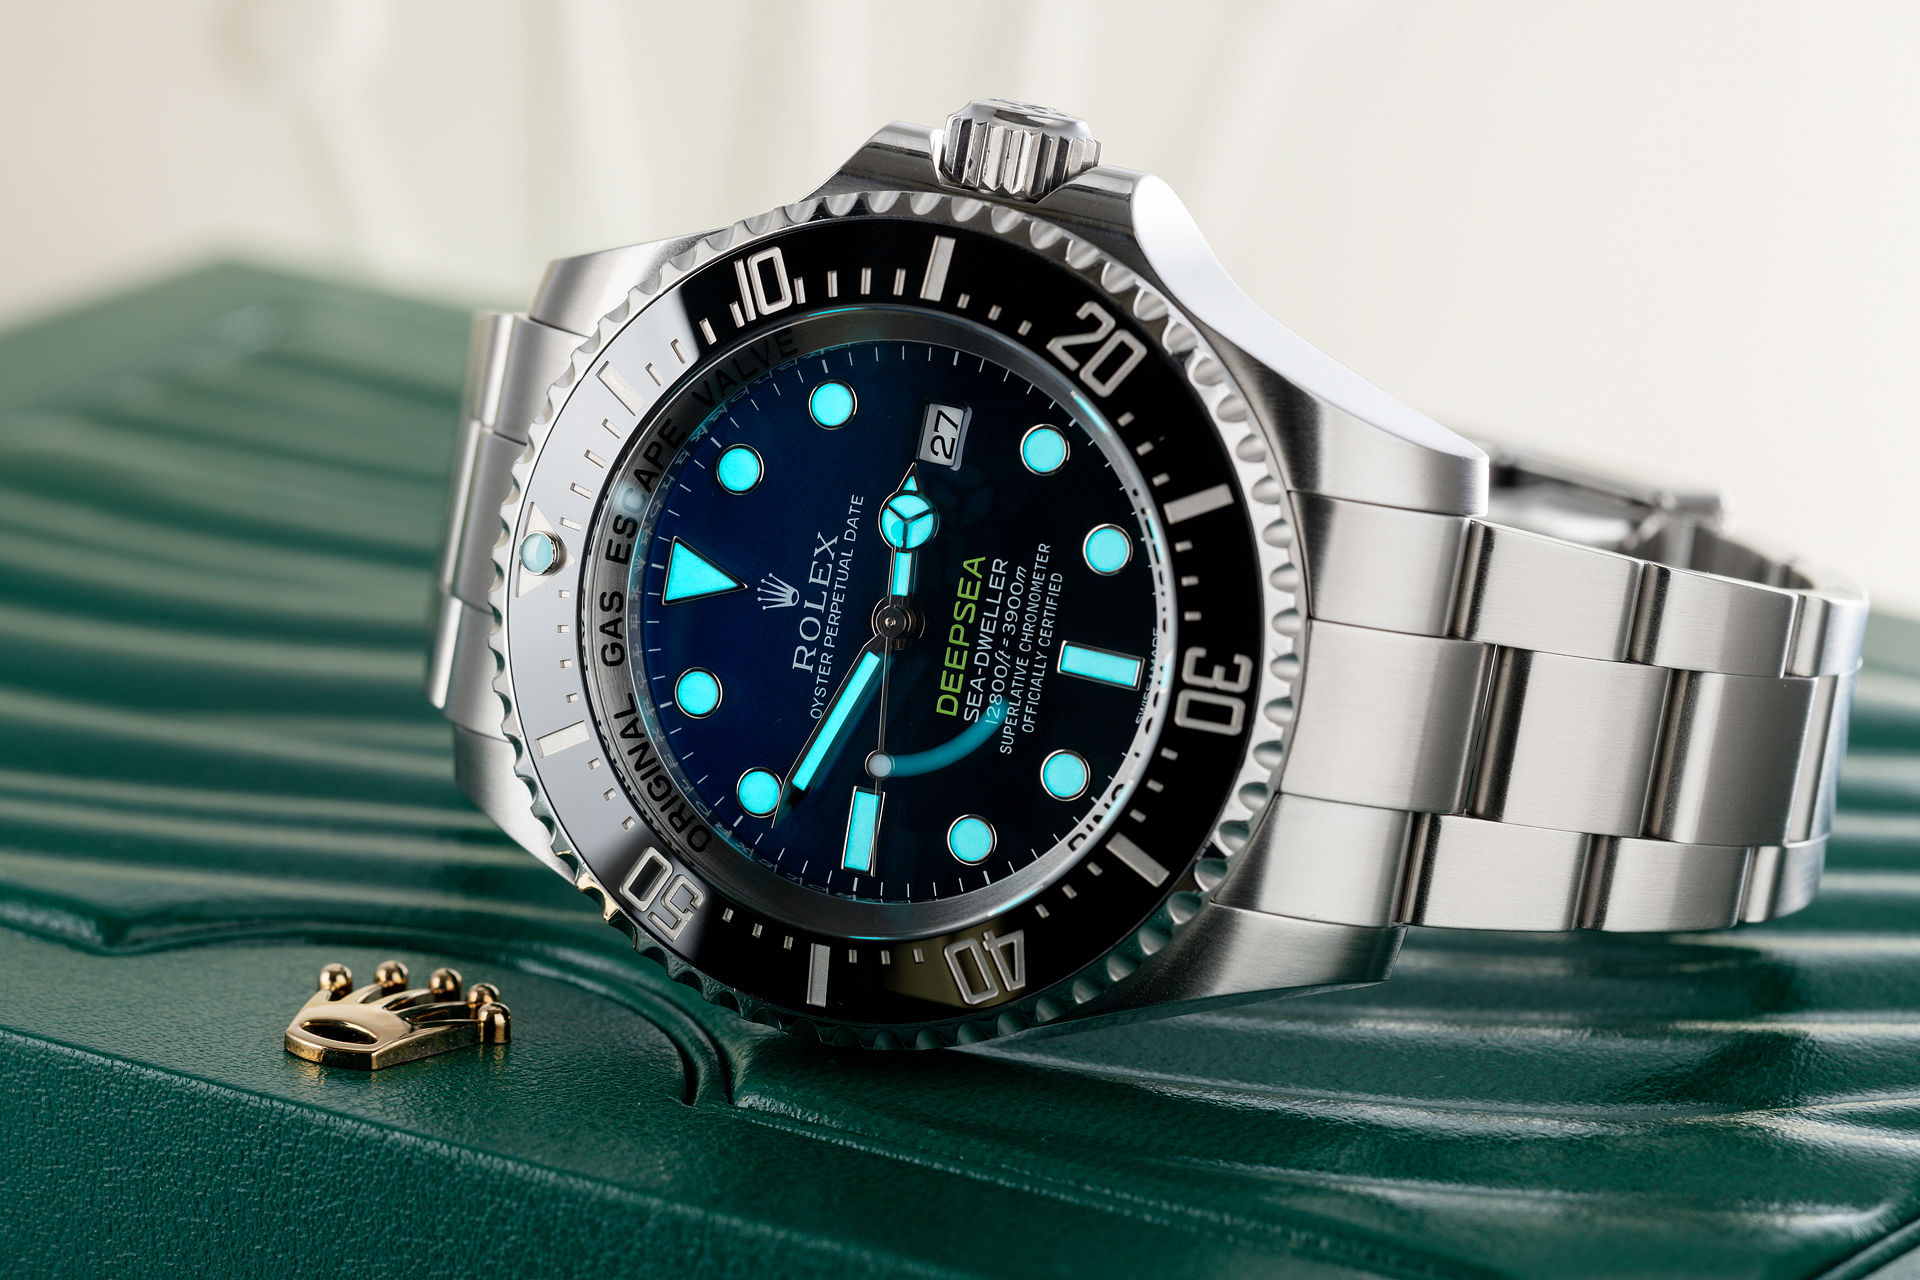 ref 116660 | Under Rolex Warranty  | Rolex Sea-Dweller Deepsea